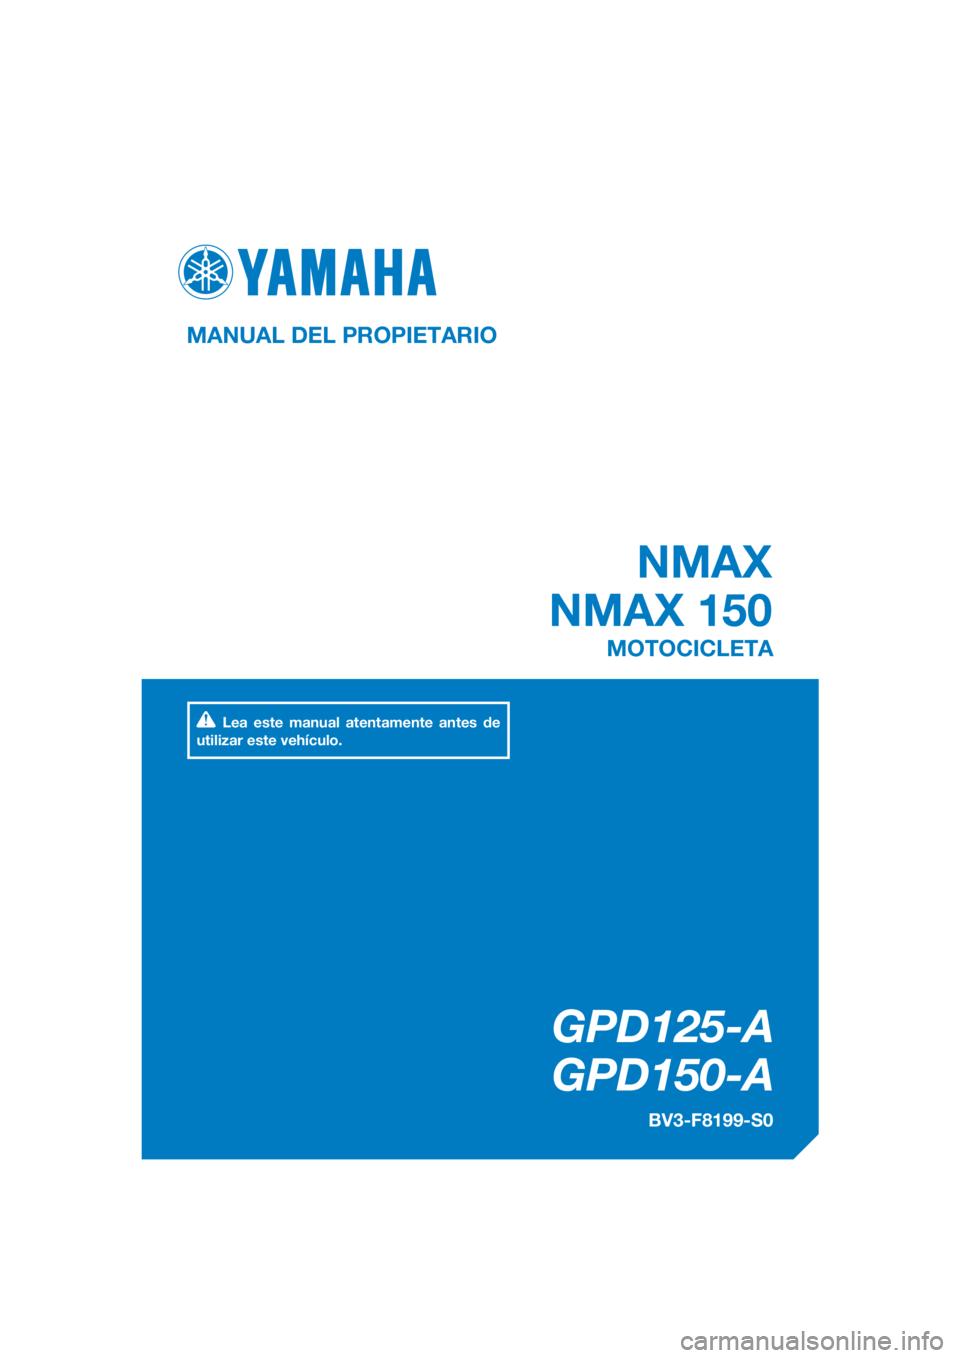 YAMAHA NMAX 125 2017  Manuale de Empleo (in Spanish) DIC183
NMAX
NMAX 150
GPD125-A
GPD150-A
MANUAL DEL PROPIETARIO
BV3-F8199-S0
MOTOCICLETA
Lea este manual atentamente antes de 
utilizar este vehículo.
[Spanish  (S)] 